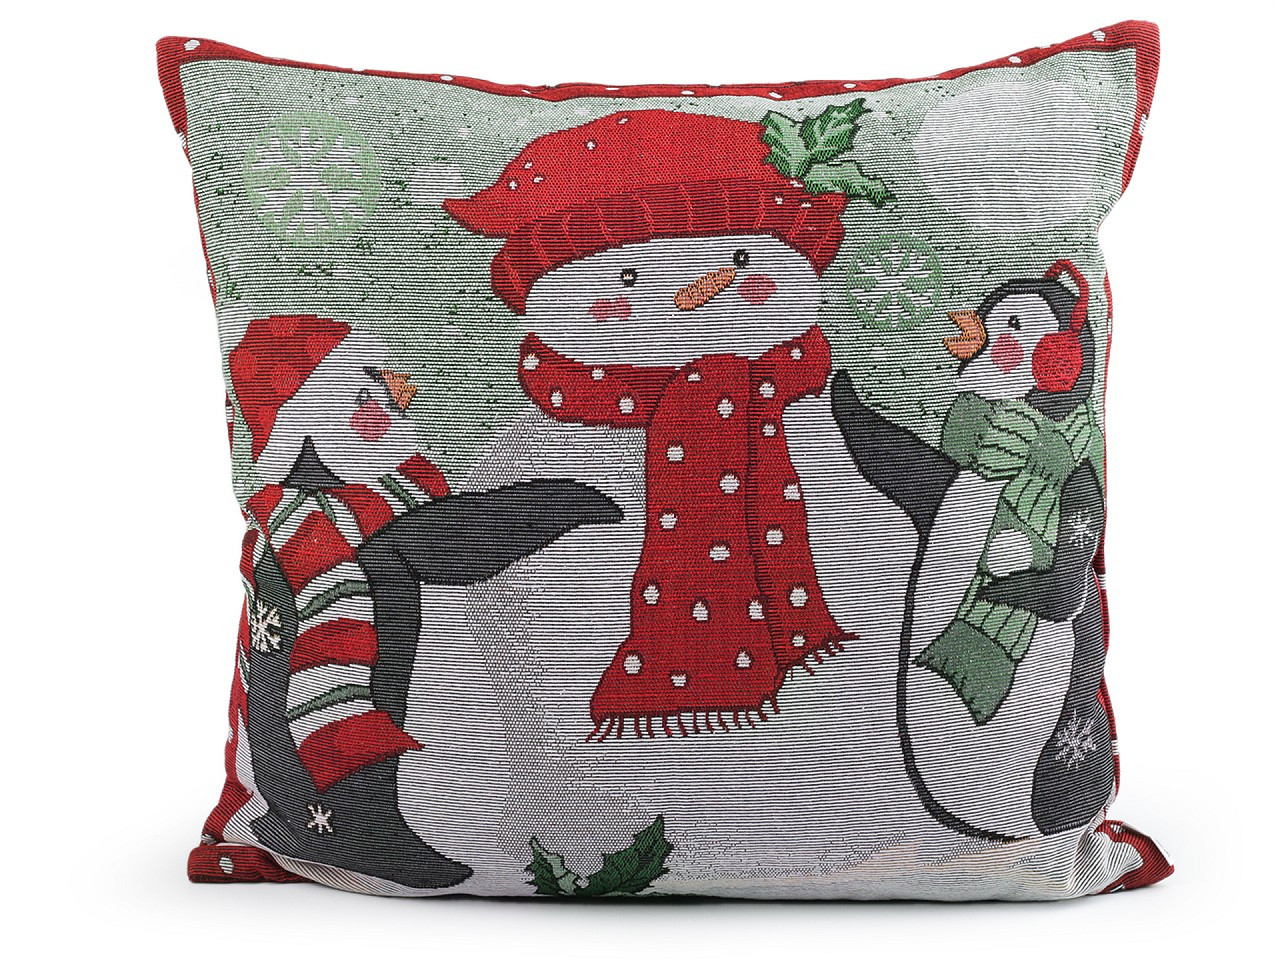 Vánoční dekorační polštář dětský motiv 45x45 cm gobelín, barva 3 šedá nejsvětlejší